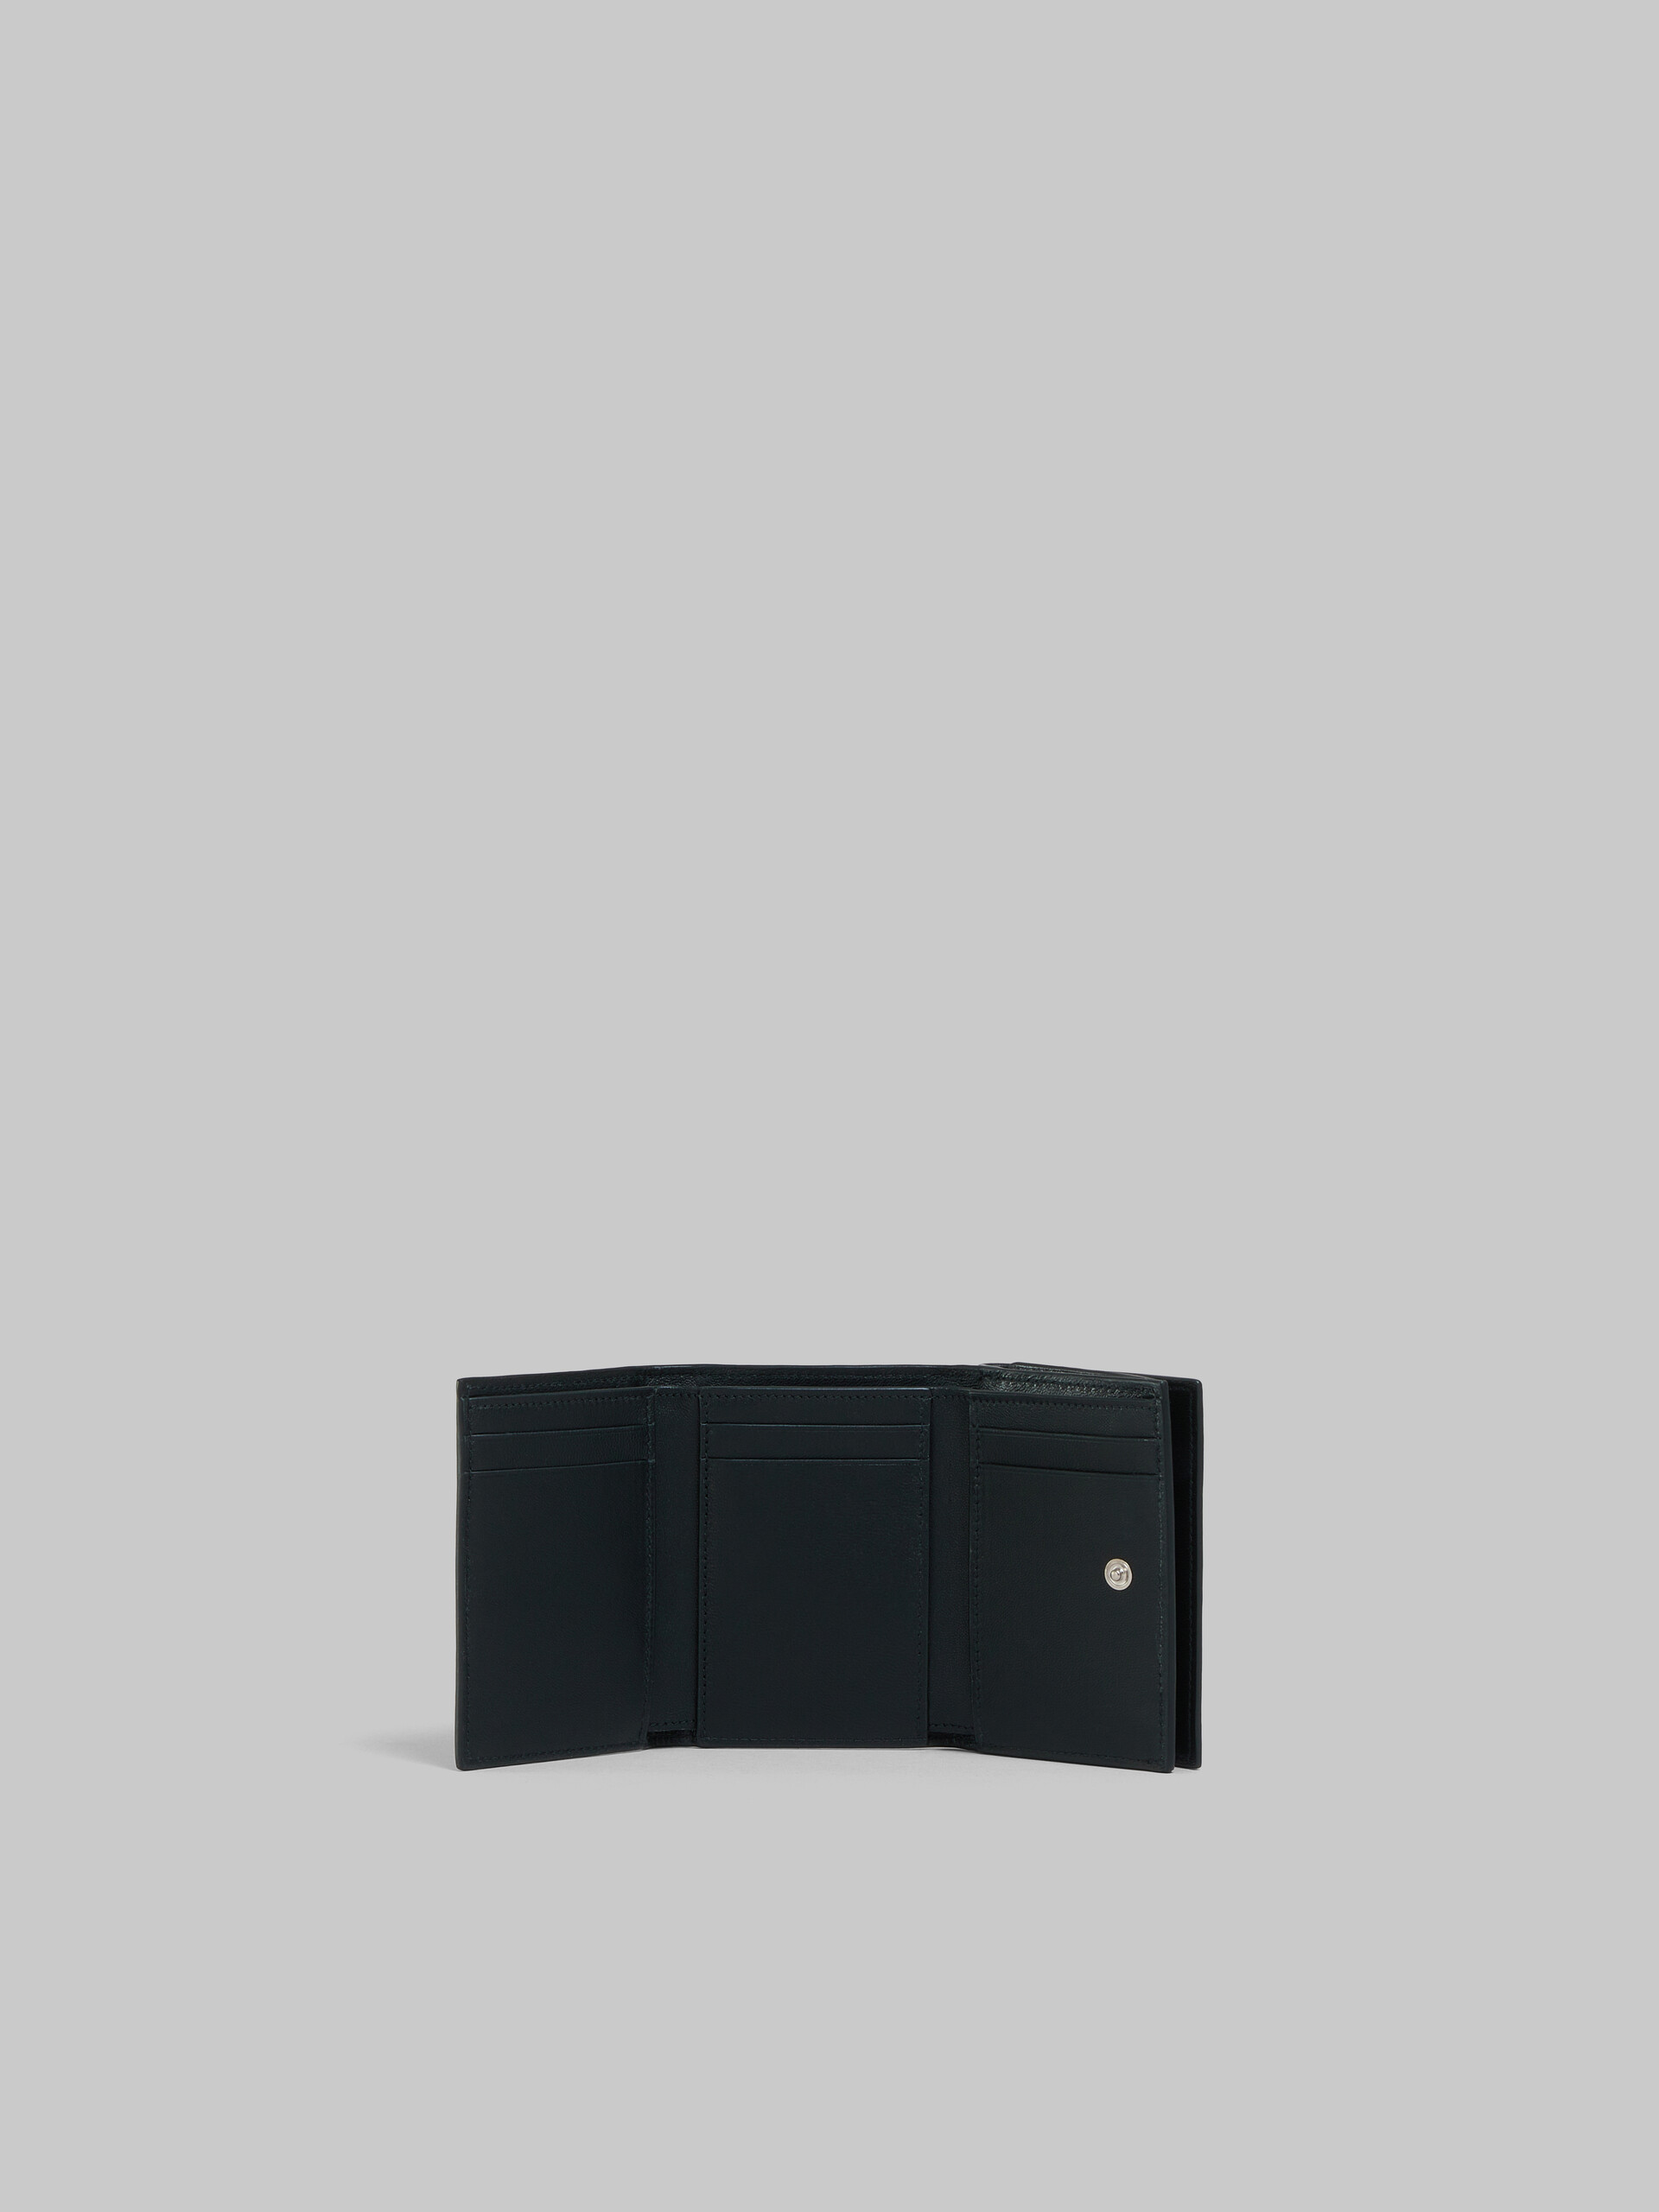 ブラック レザー メンディング 三つ折りウォレット - 財布 - Image 2